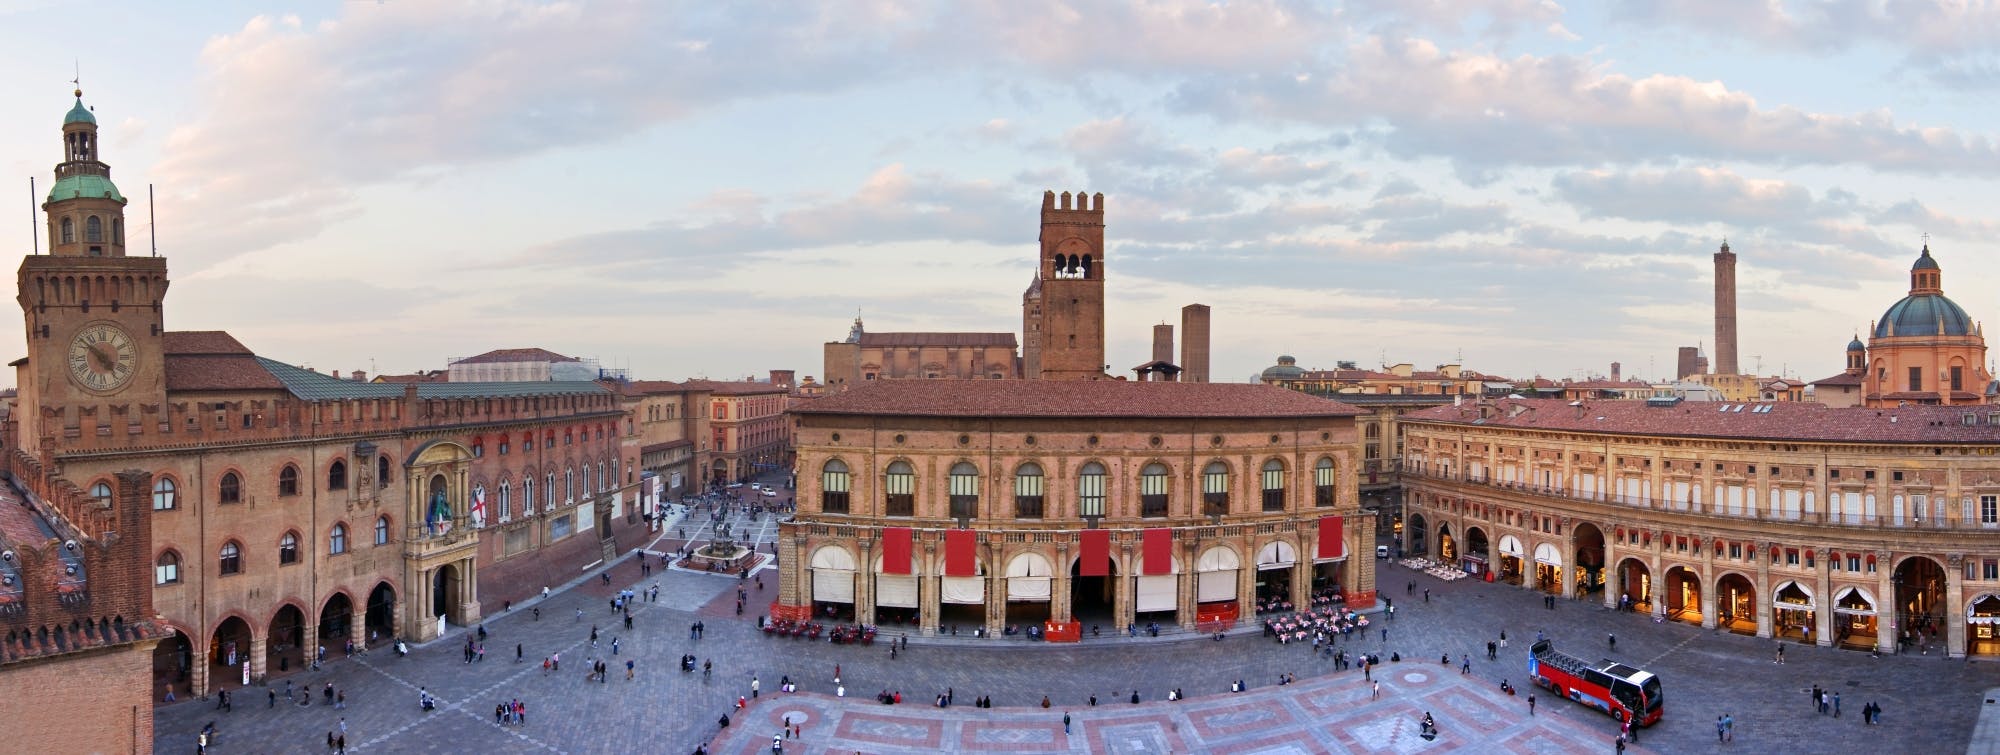 Geführte Fahrradtour durch das Stadtzentrum von Bologna